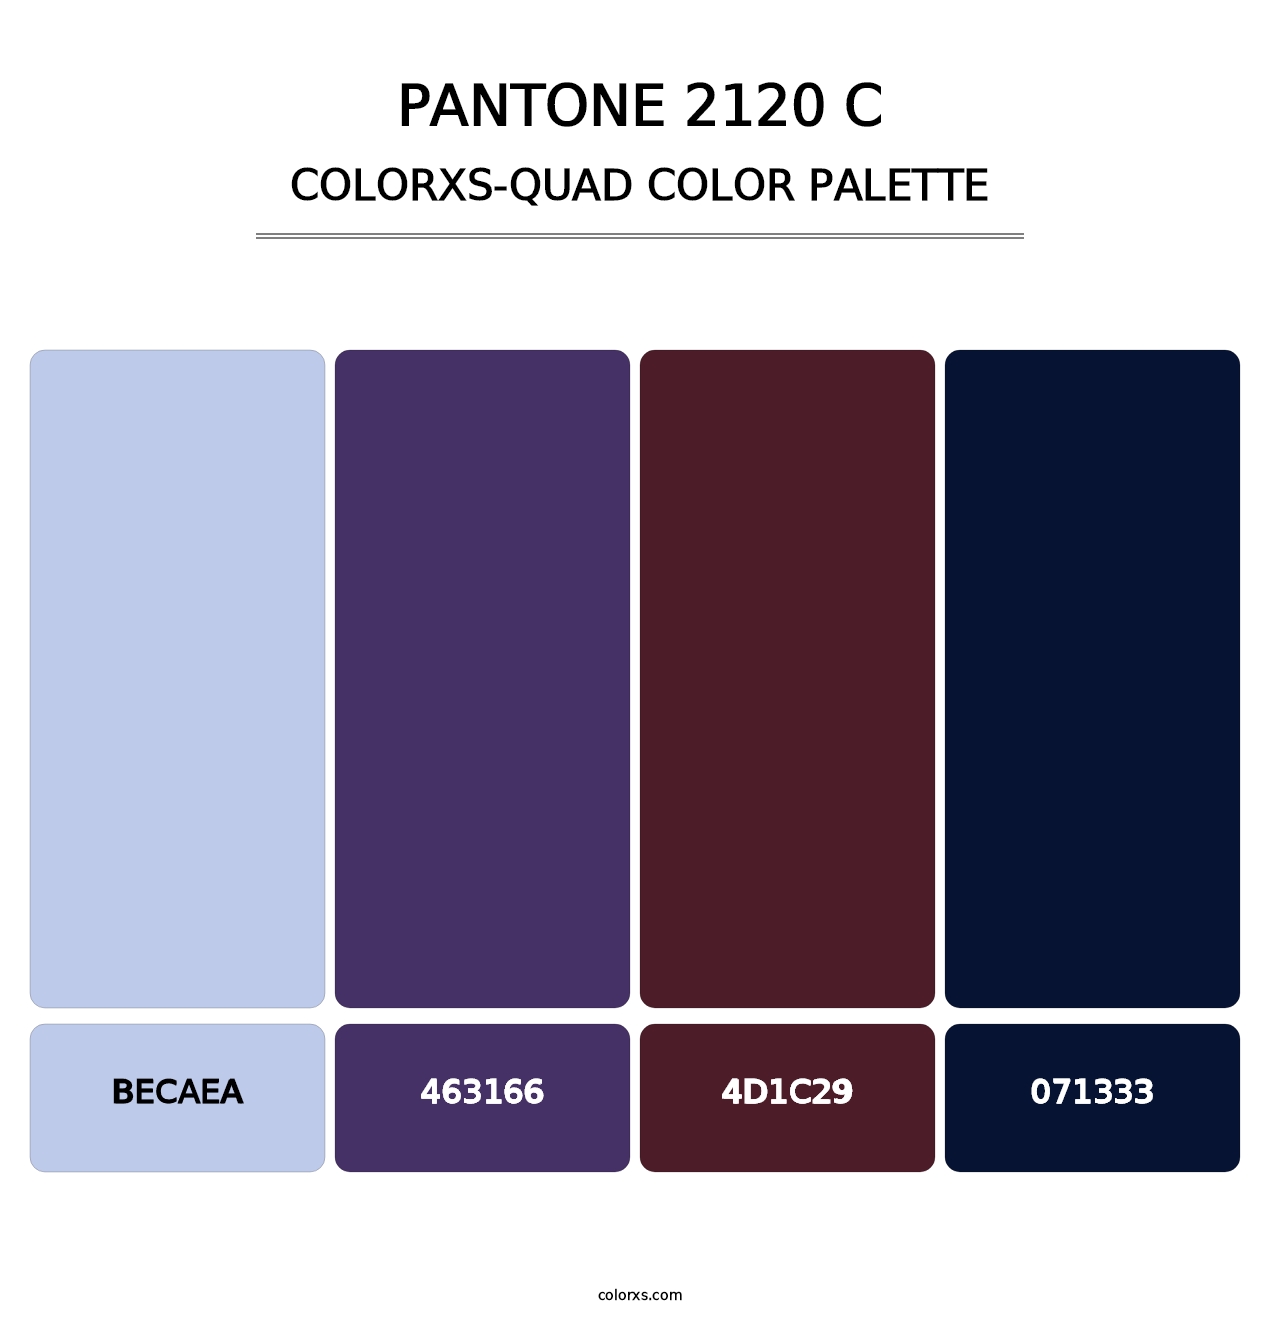 PANTONE 2120 C - Colorxs Quad Palette